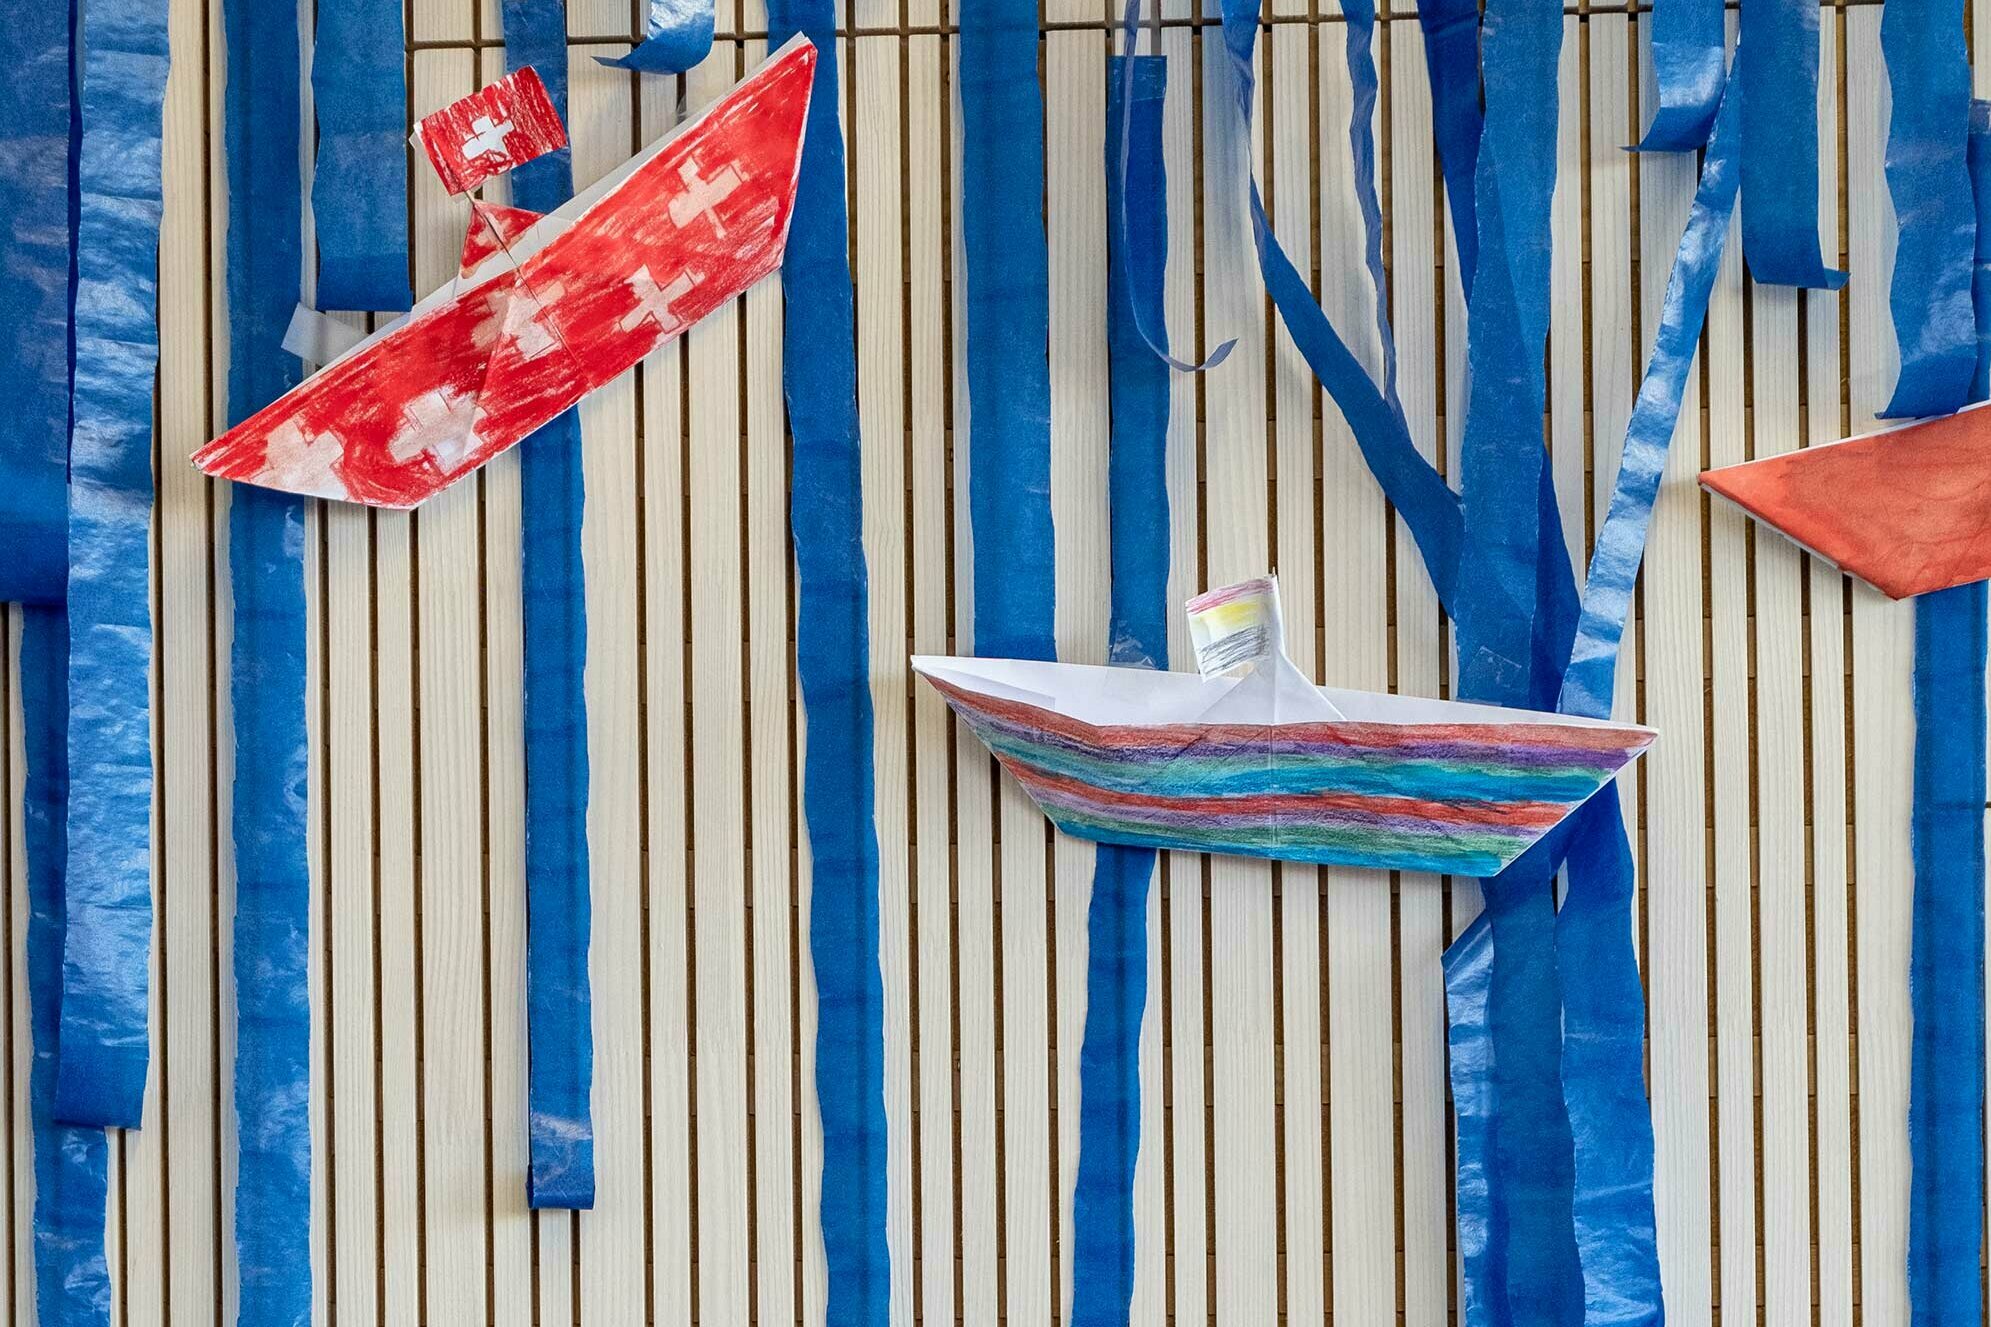 Barchette di carta fatte a mano e dipinte appese alla parete come decorazione. Su una barchetta è dipinta la bandiera svizzera.